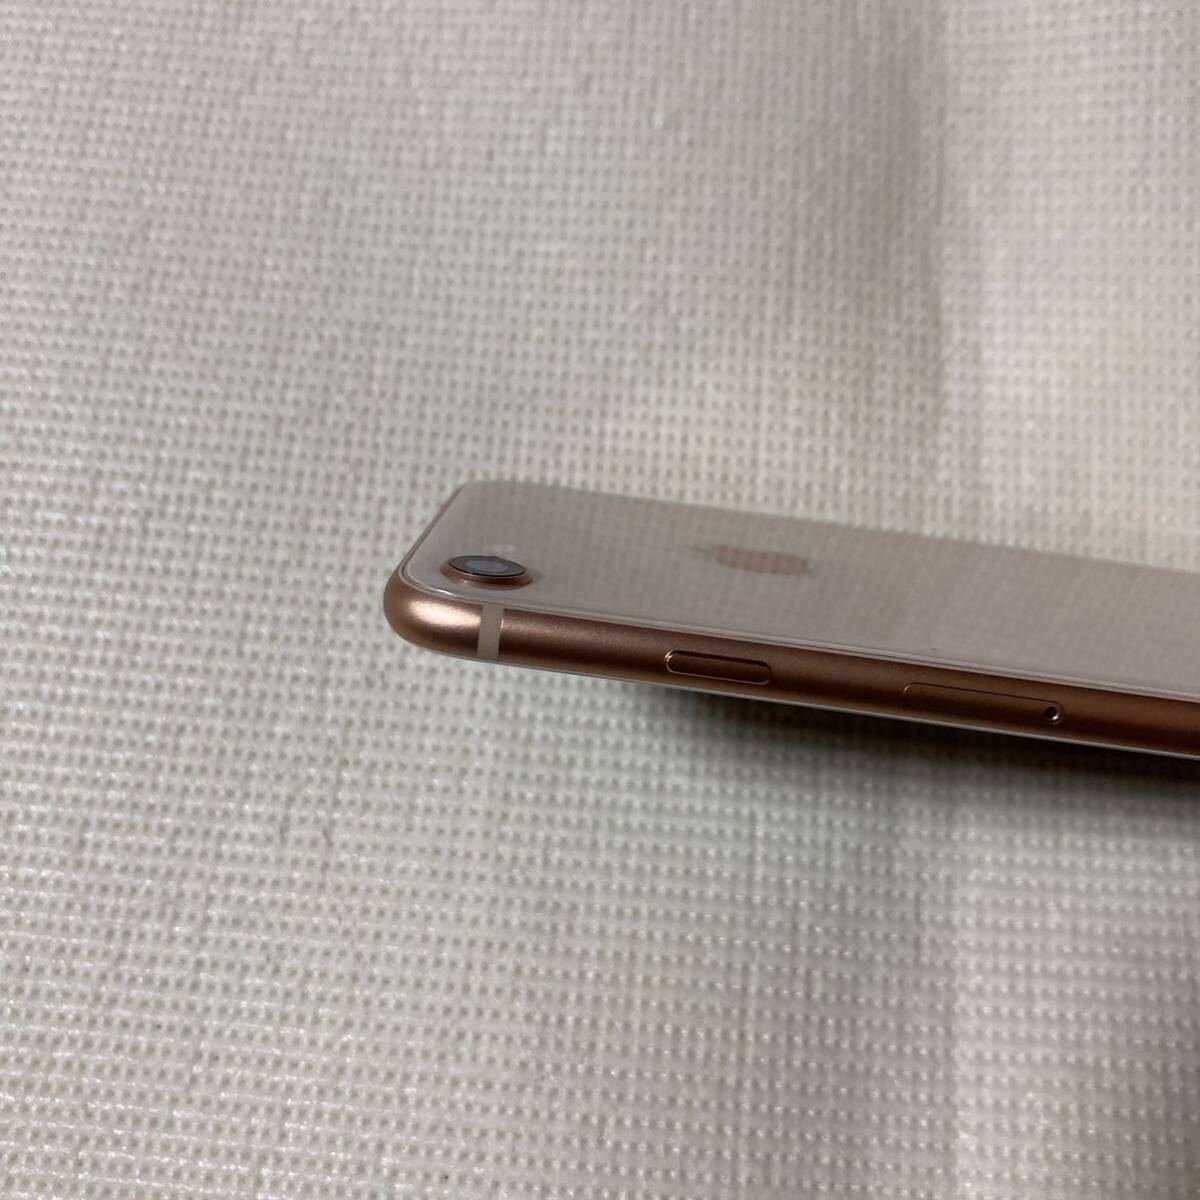 送料無料 超美品 SIMフリー iPhone8 64GB ゴールド バッテリー最大容量100% SIMロック解除済 付属品_画像7